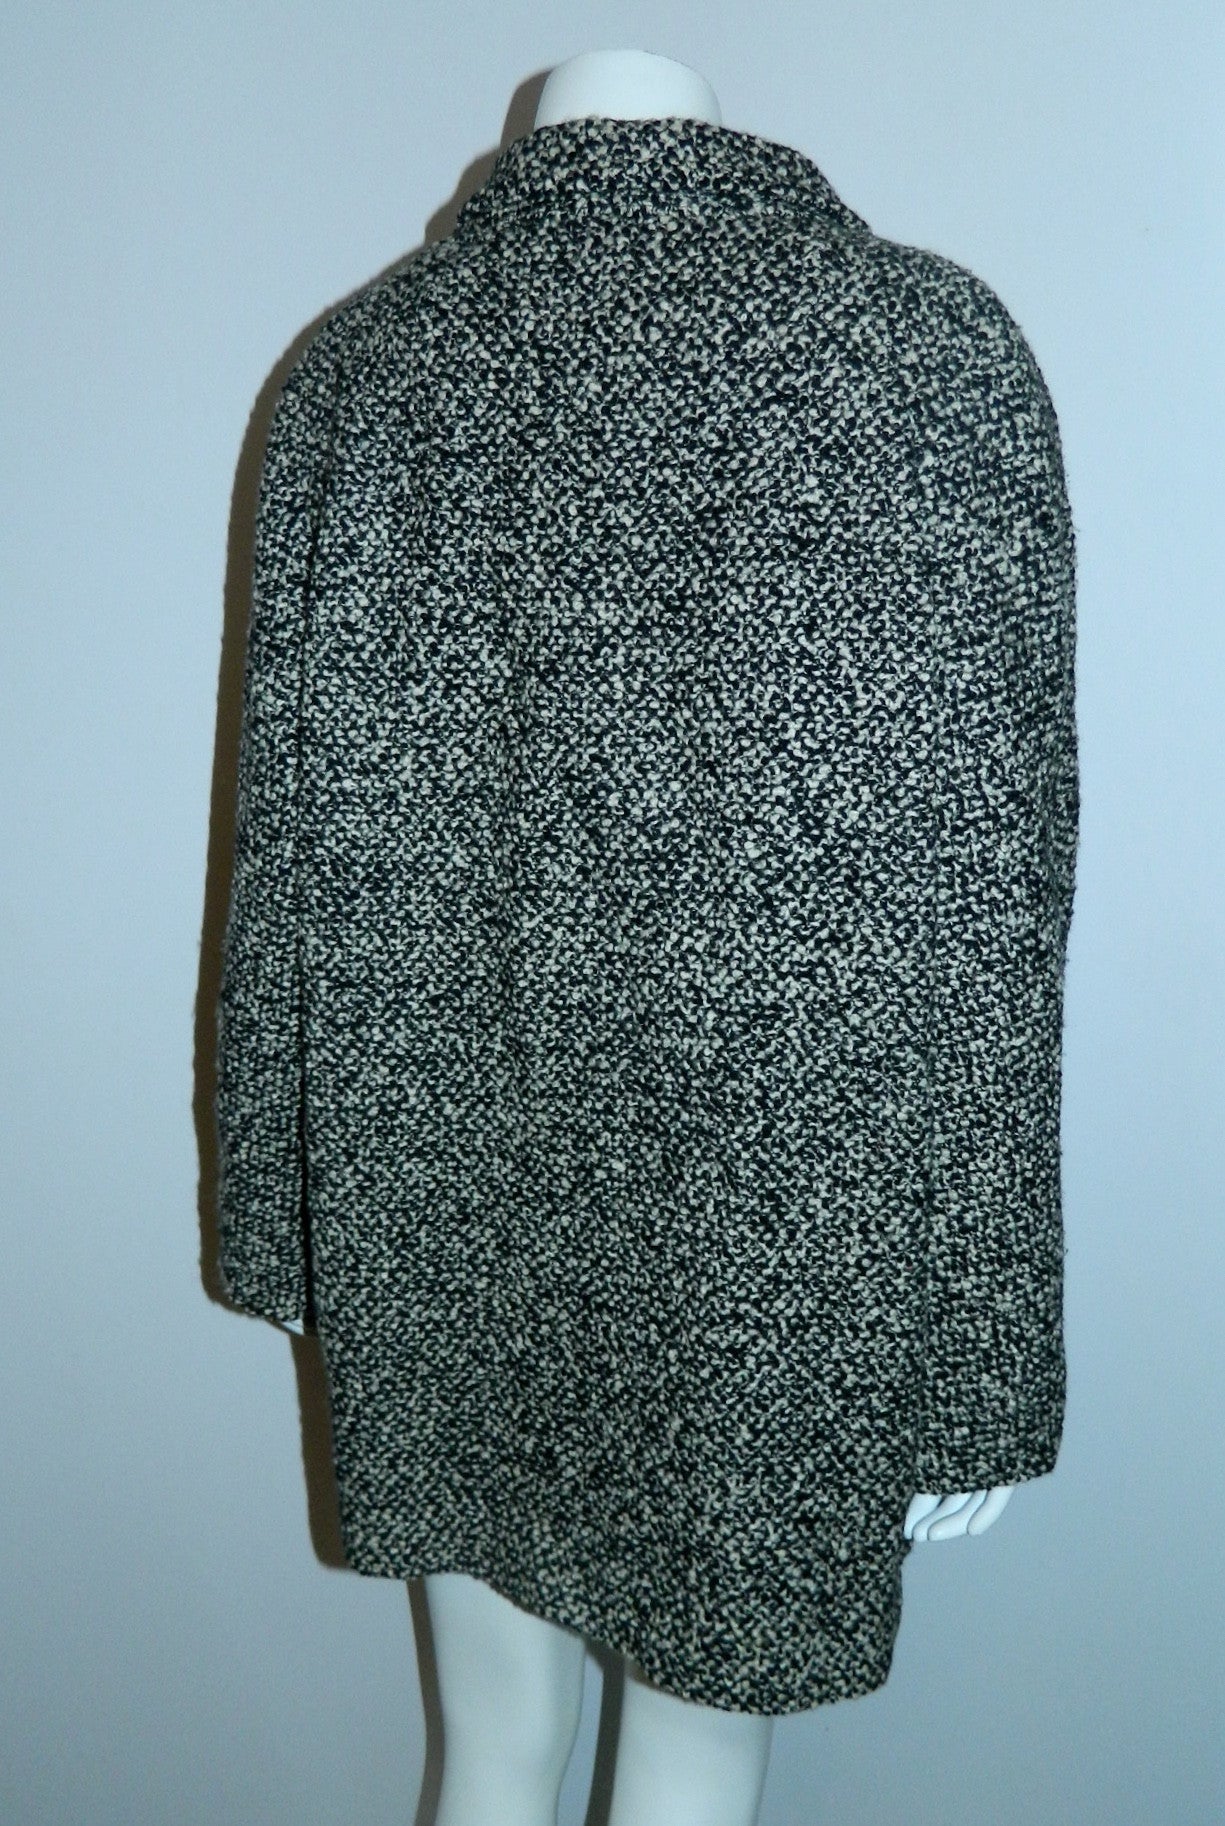 vintage tweed cocoon coat 1950s / 1960s Best & Co. black white boucle / oversized boxy car coat